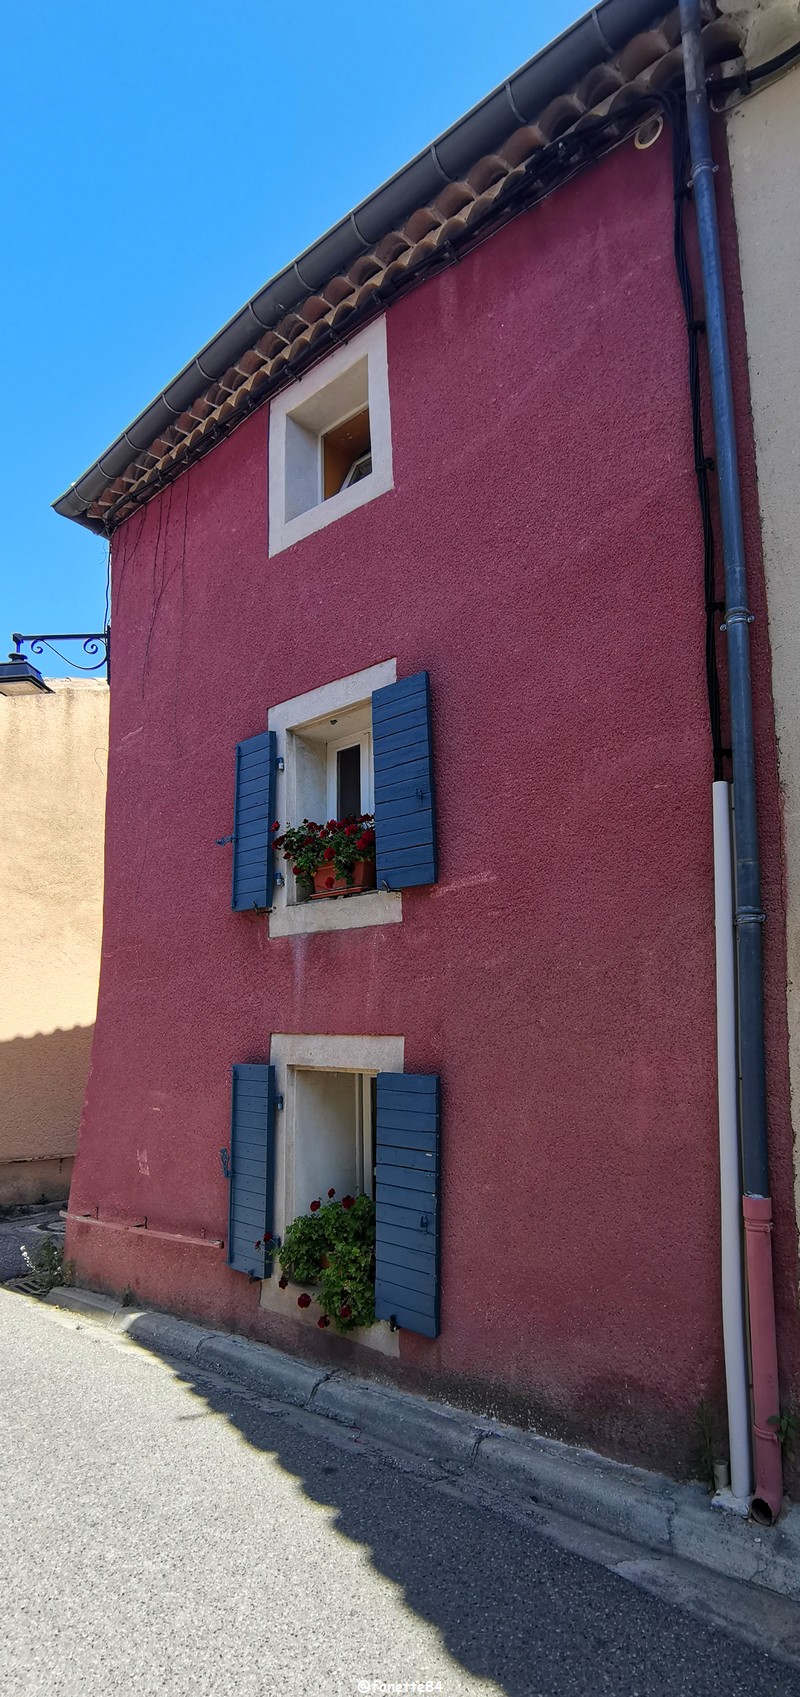 villedieu maison rouge (7).jpg